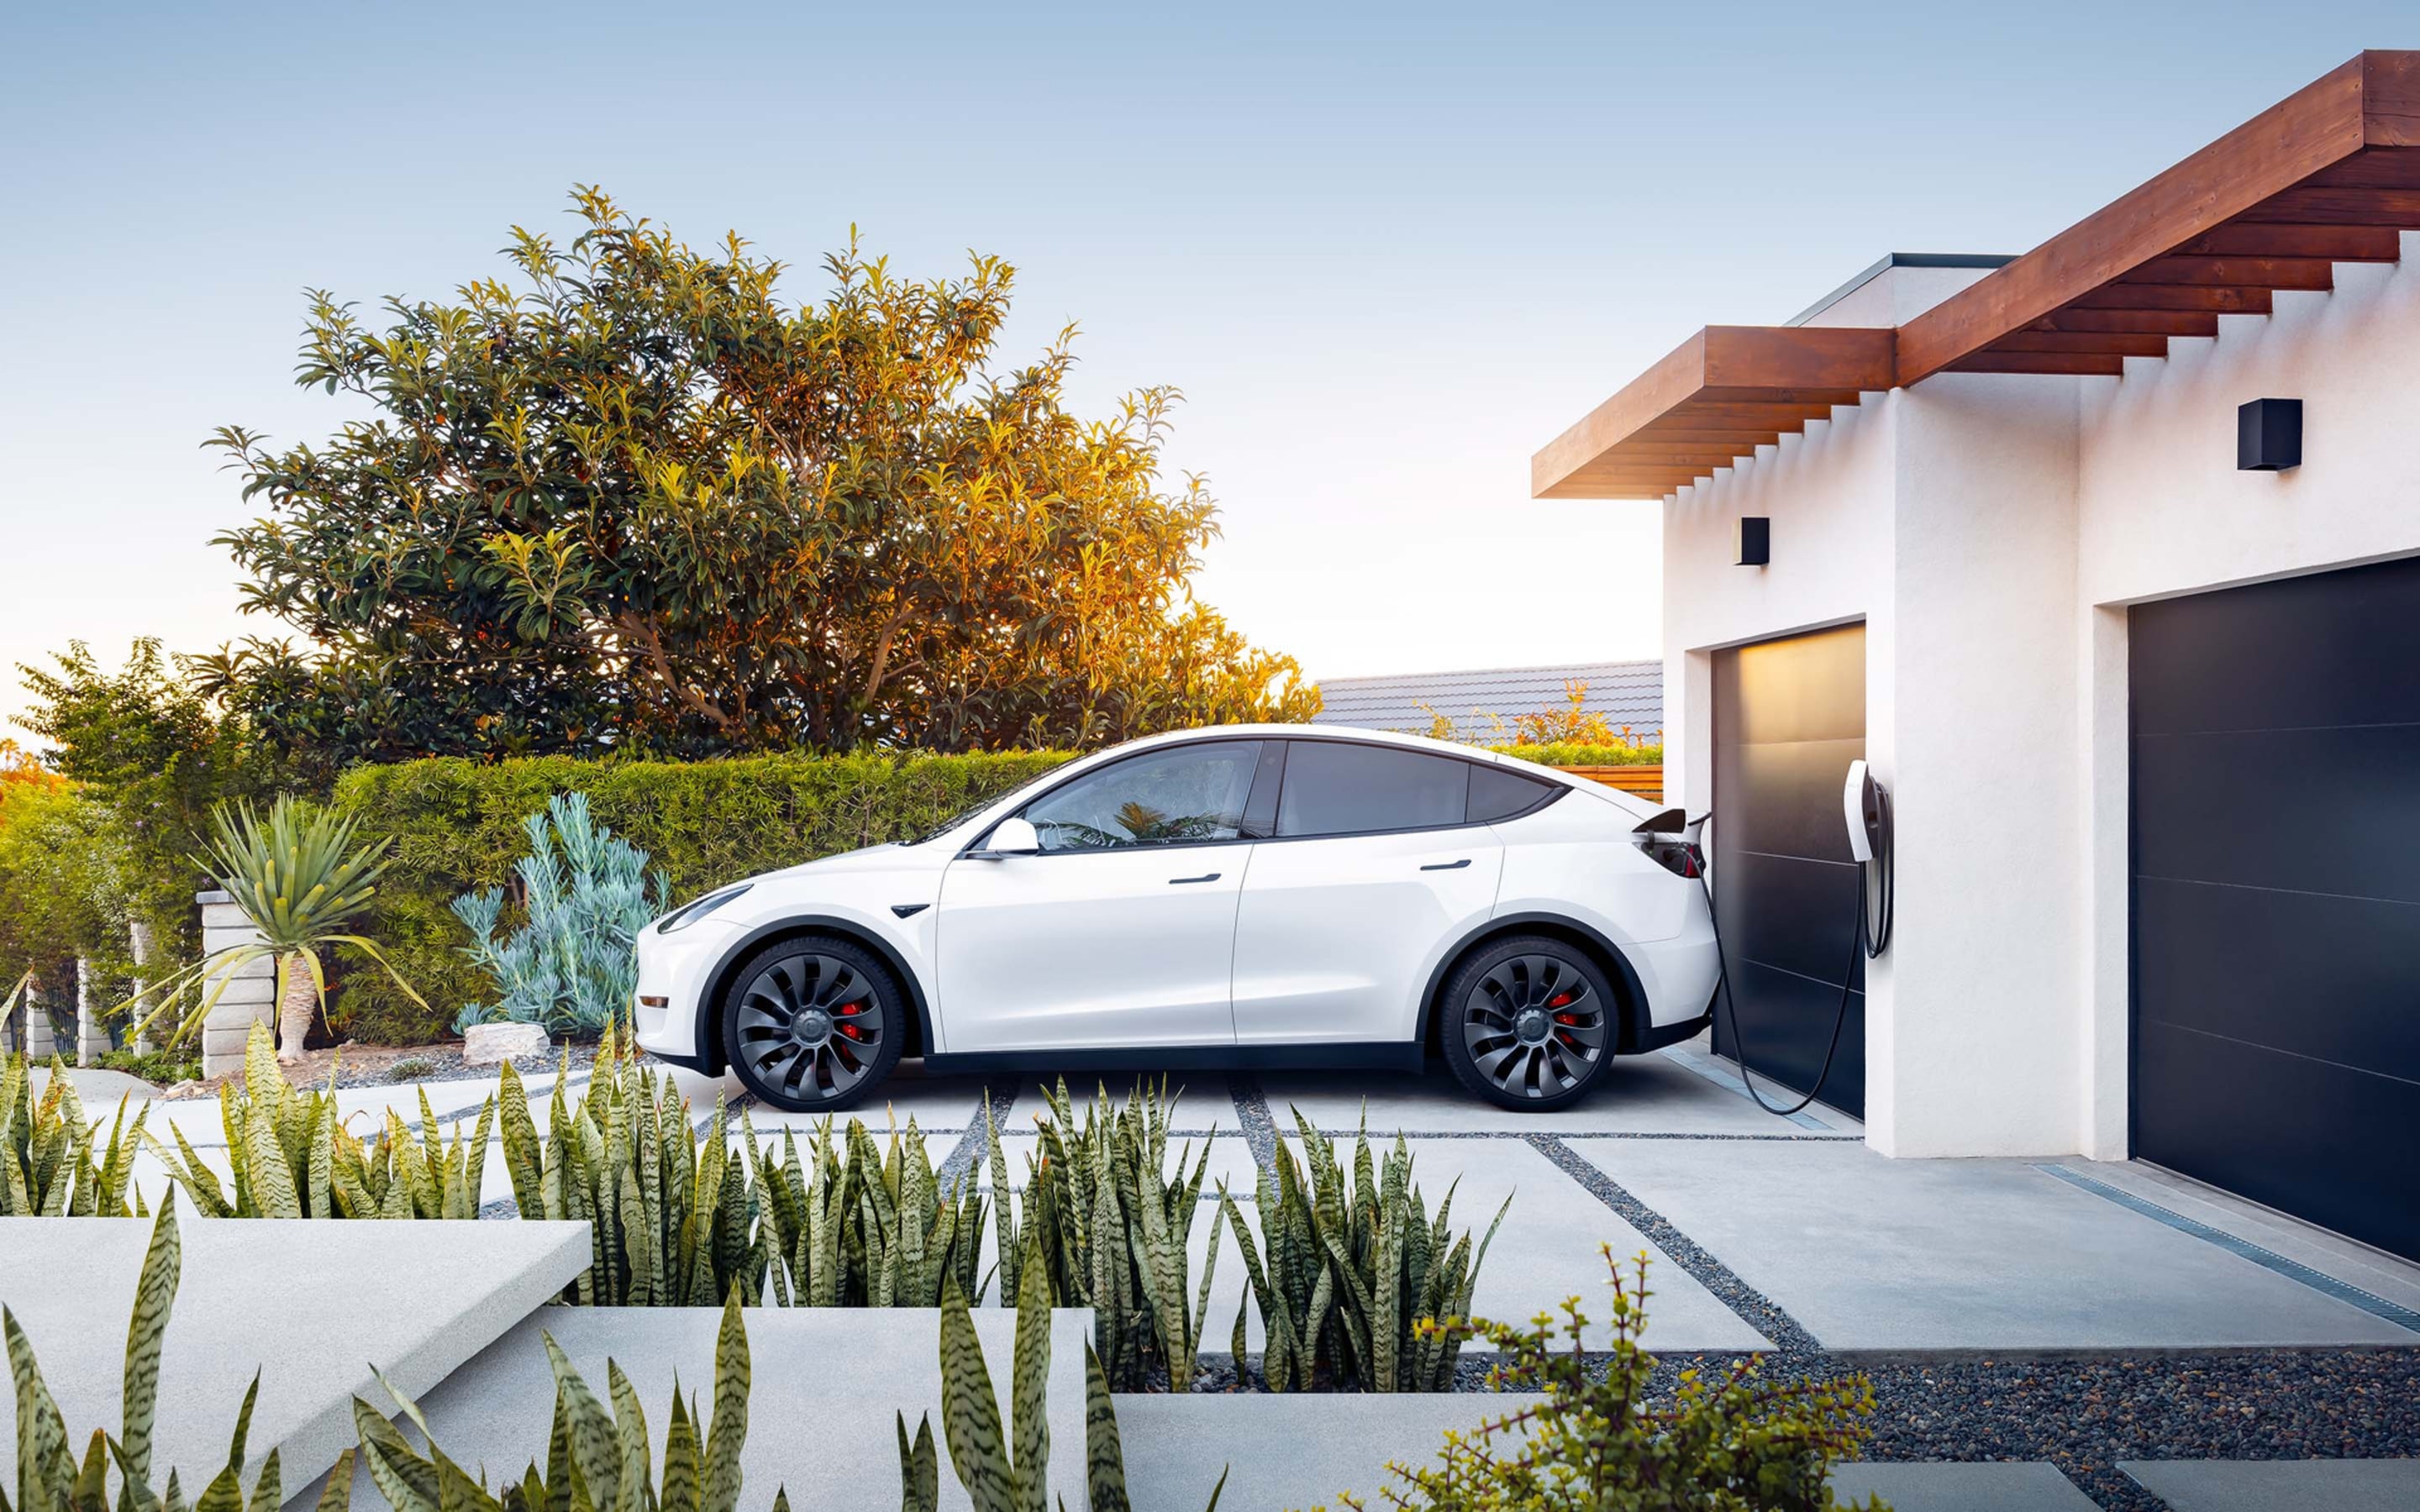 白色 Model S 在车库中通过第三代壁挂式连接器充电